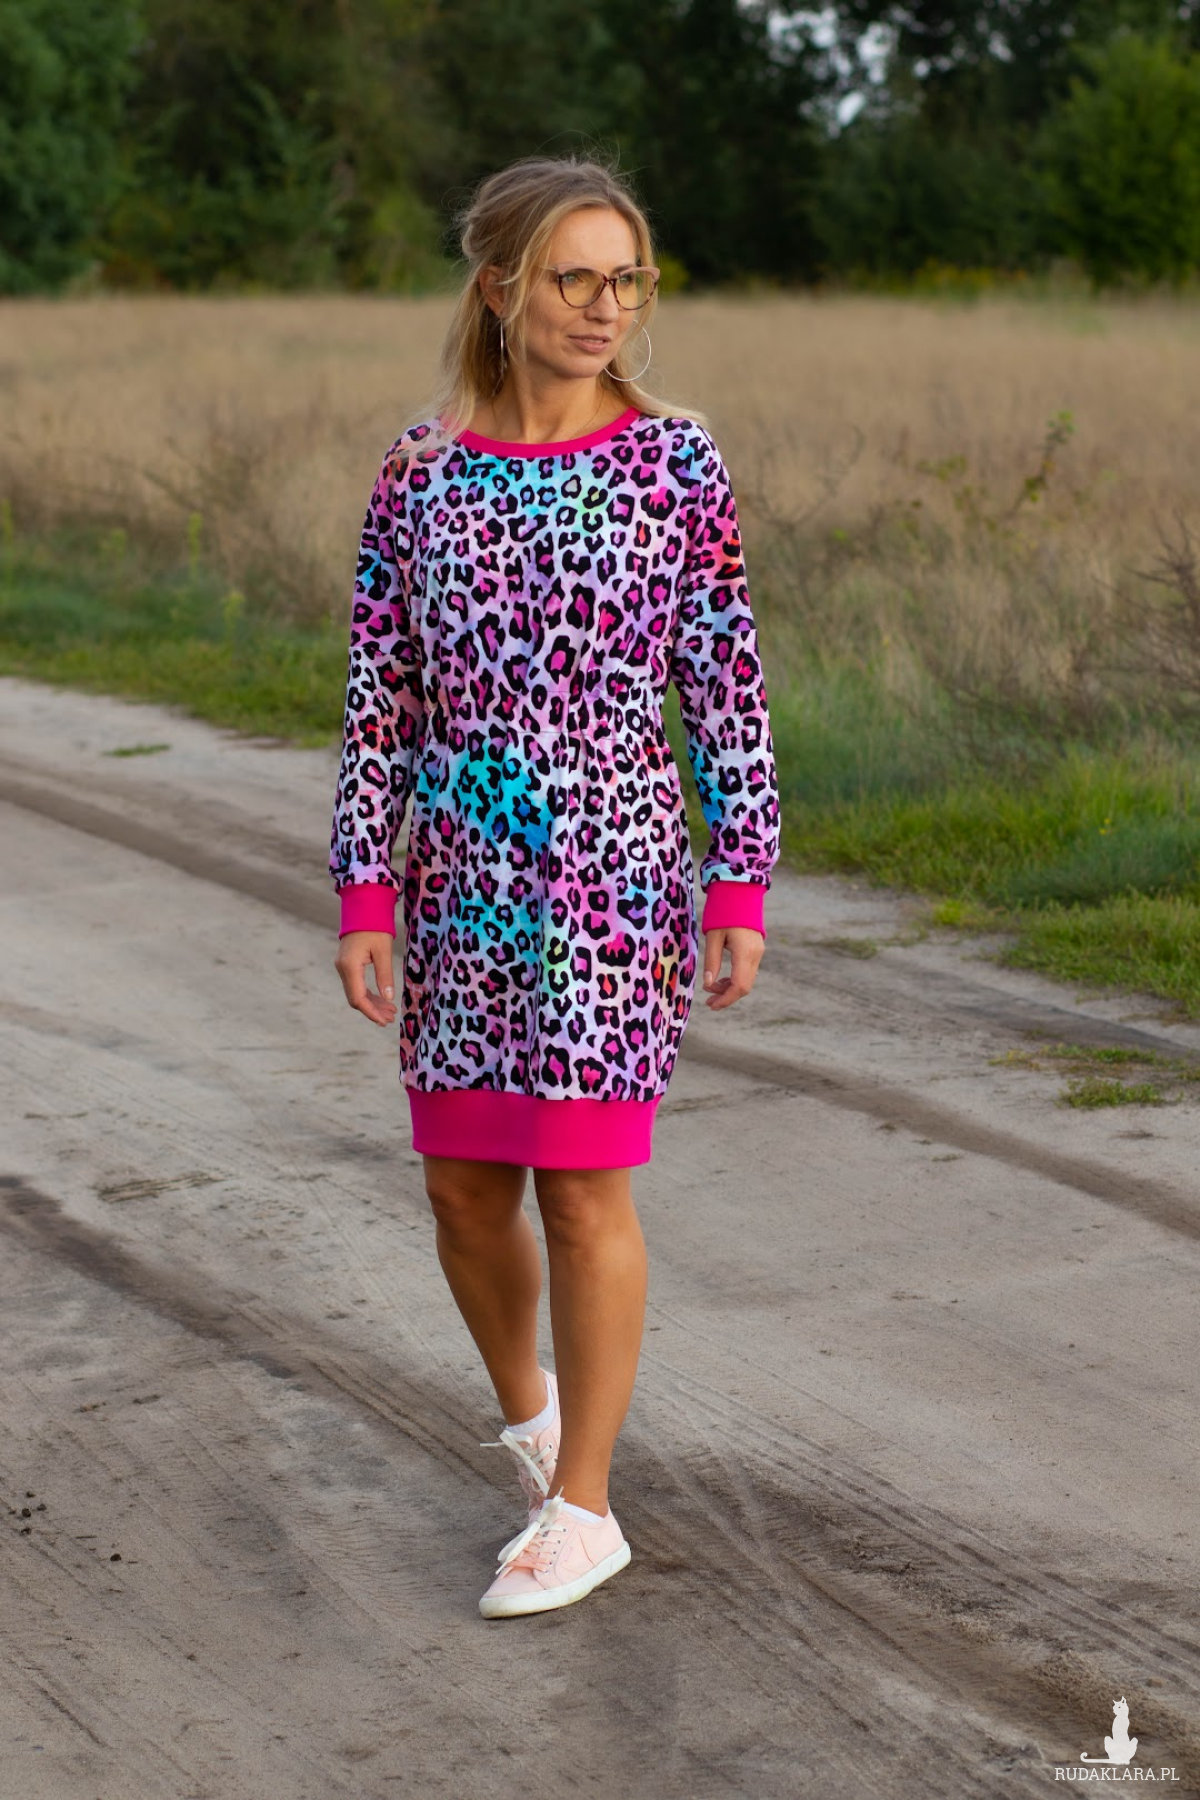 Sukienka bardzo kobieca "Kolorowa pantera"